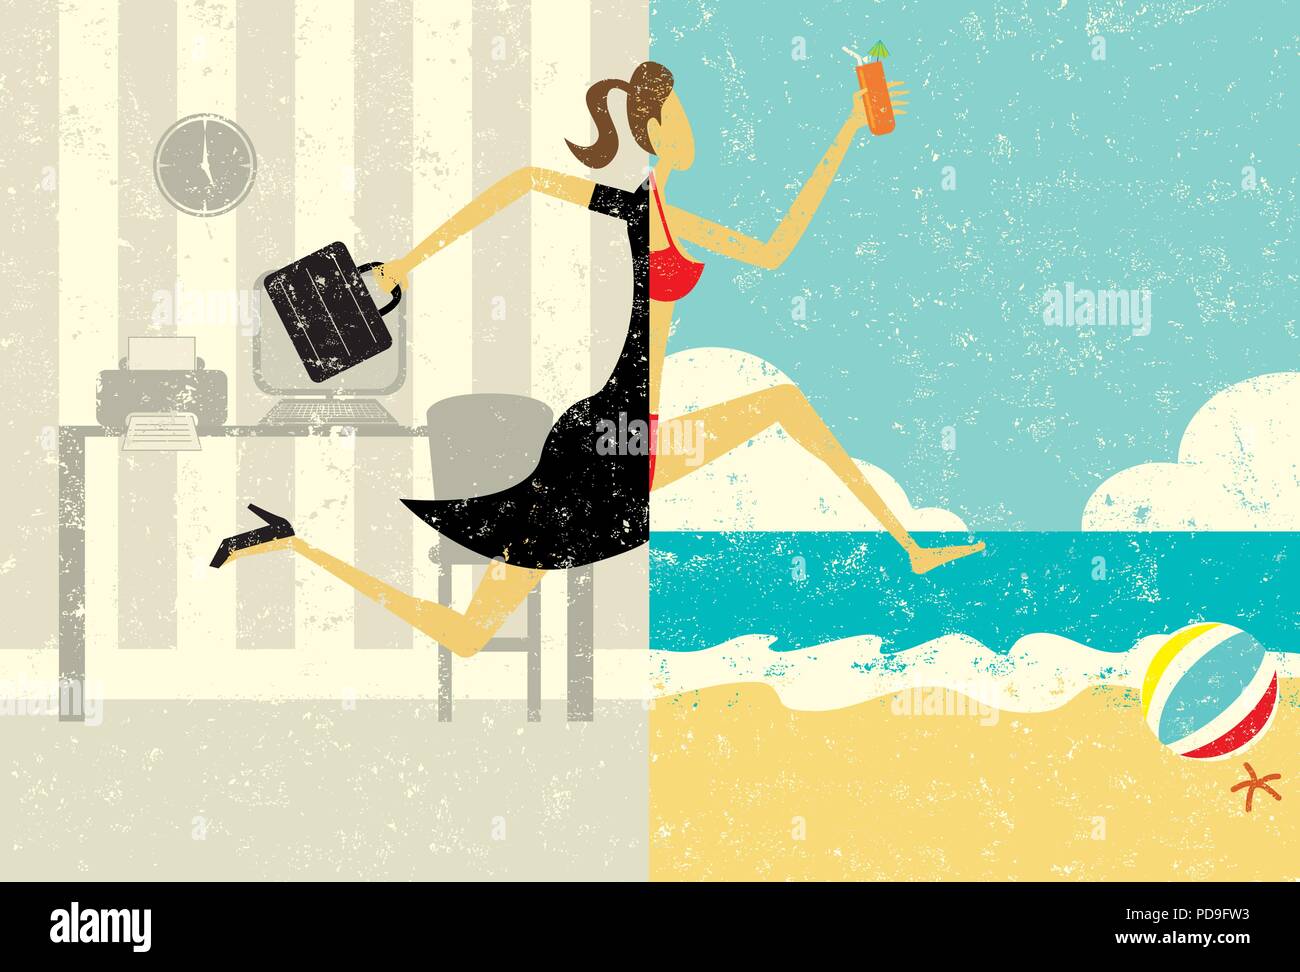 Übergang in den Urlaub. Eine Geschäftsfrau mit einer Aktentasche, ein geteiltes Bild Übergang zu tragen einen Bikini am Strand Urlaub. Stock Vektor